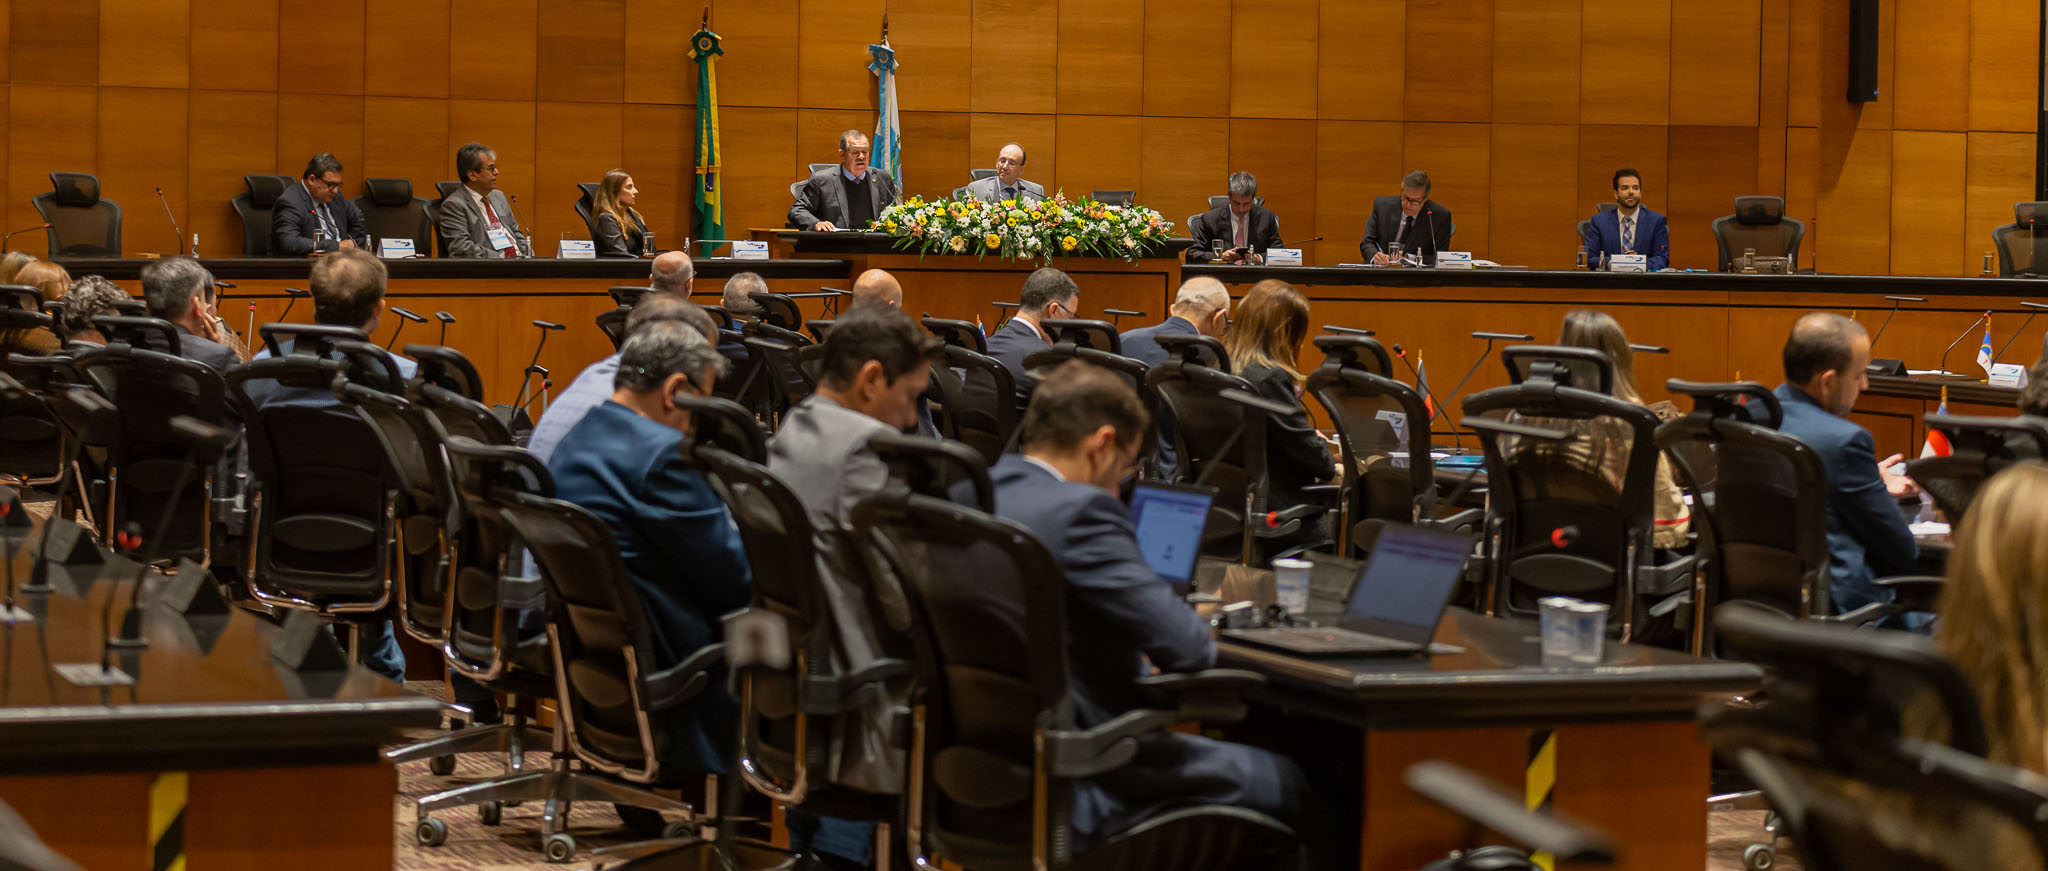 Imagem do Tribunal Pleno durante fala do presidente do Superior Tribunal de Justiça, ministro Humberto Martins